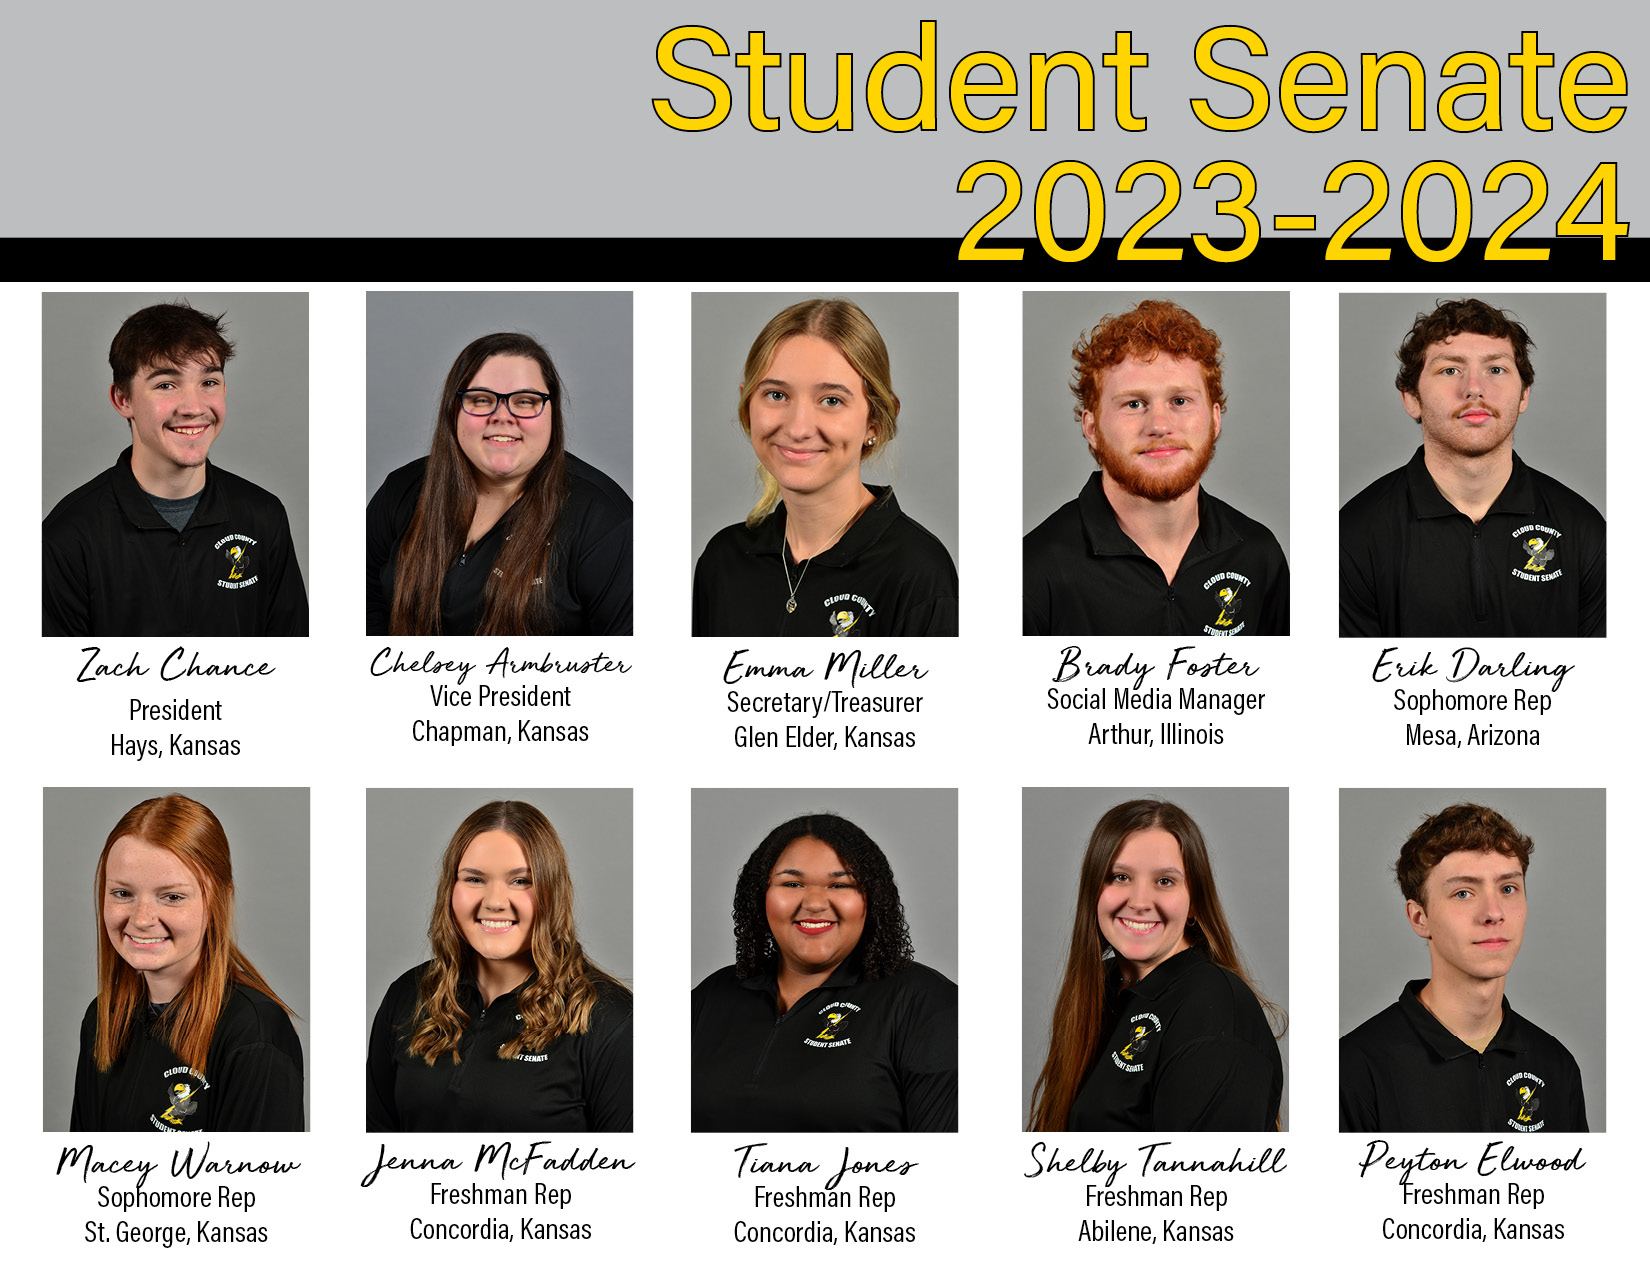 The 2023-2024 Student Senate members.